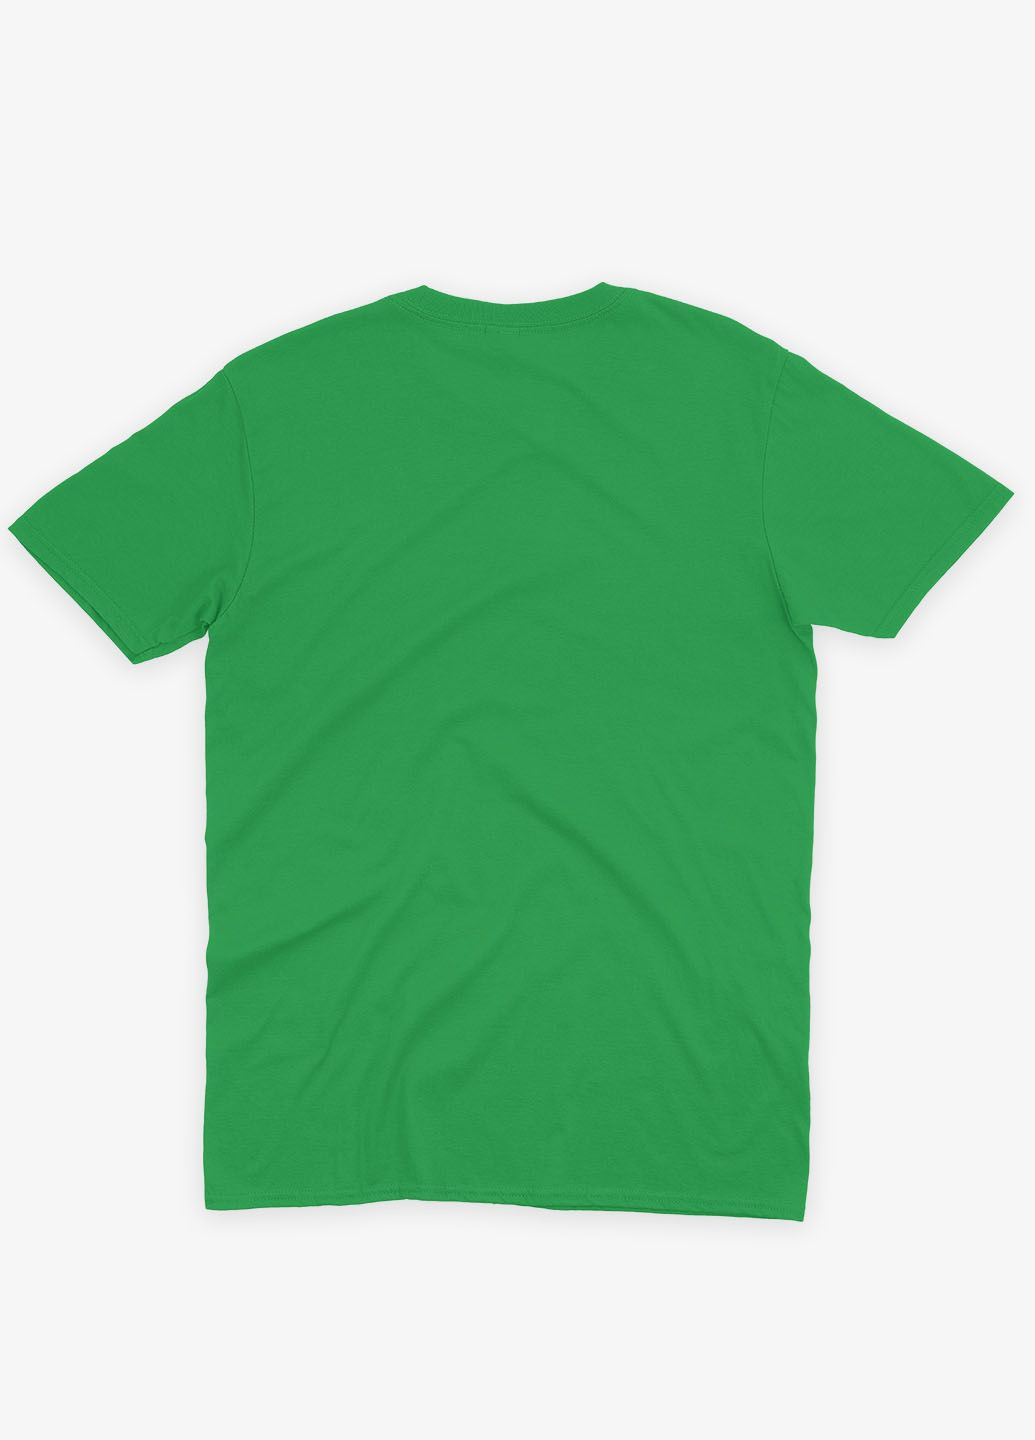 Зеленая демисезонная футболка для мальчика с принтом супезлоды - танос (ts001-1-keg-006-019-015-b) Modno